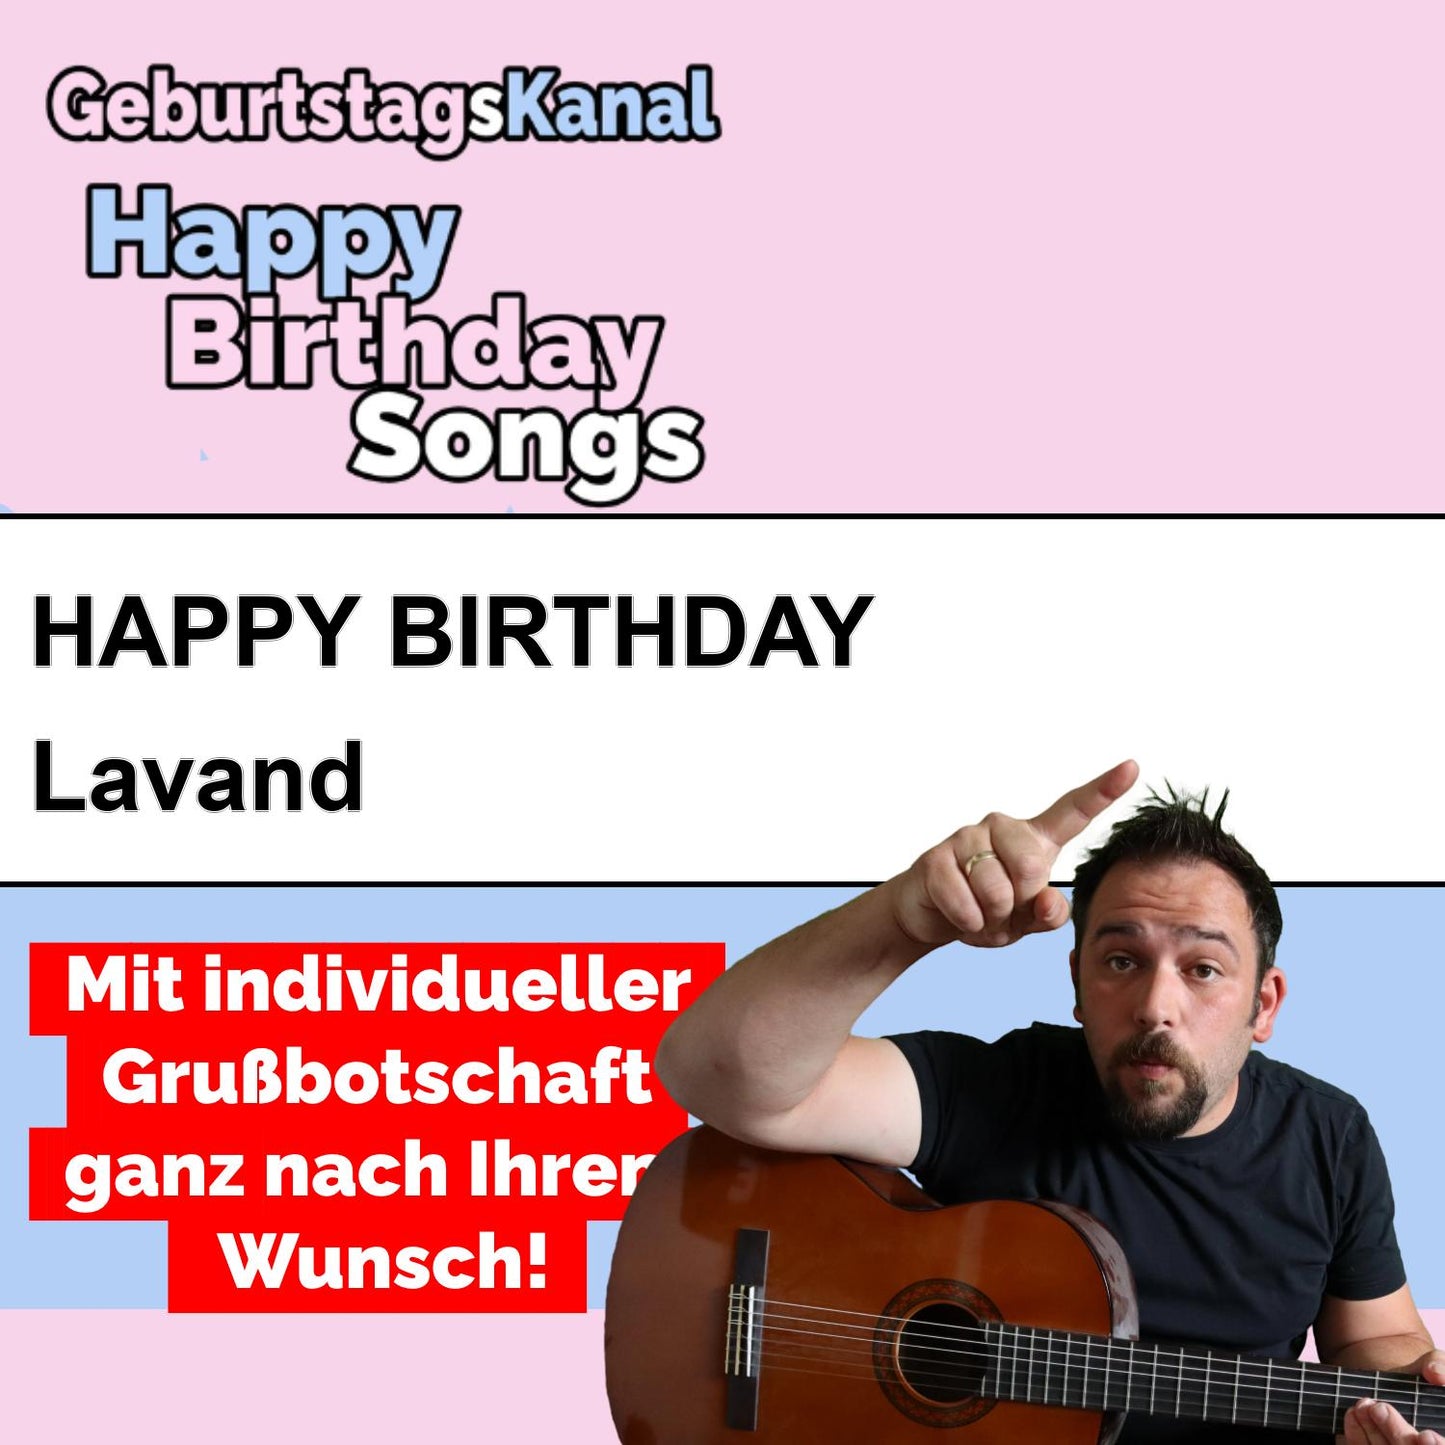 Produktbild Happy Birthday to you Lavand mit Wunschgrußbotschaft